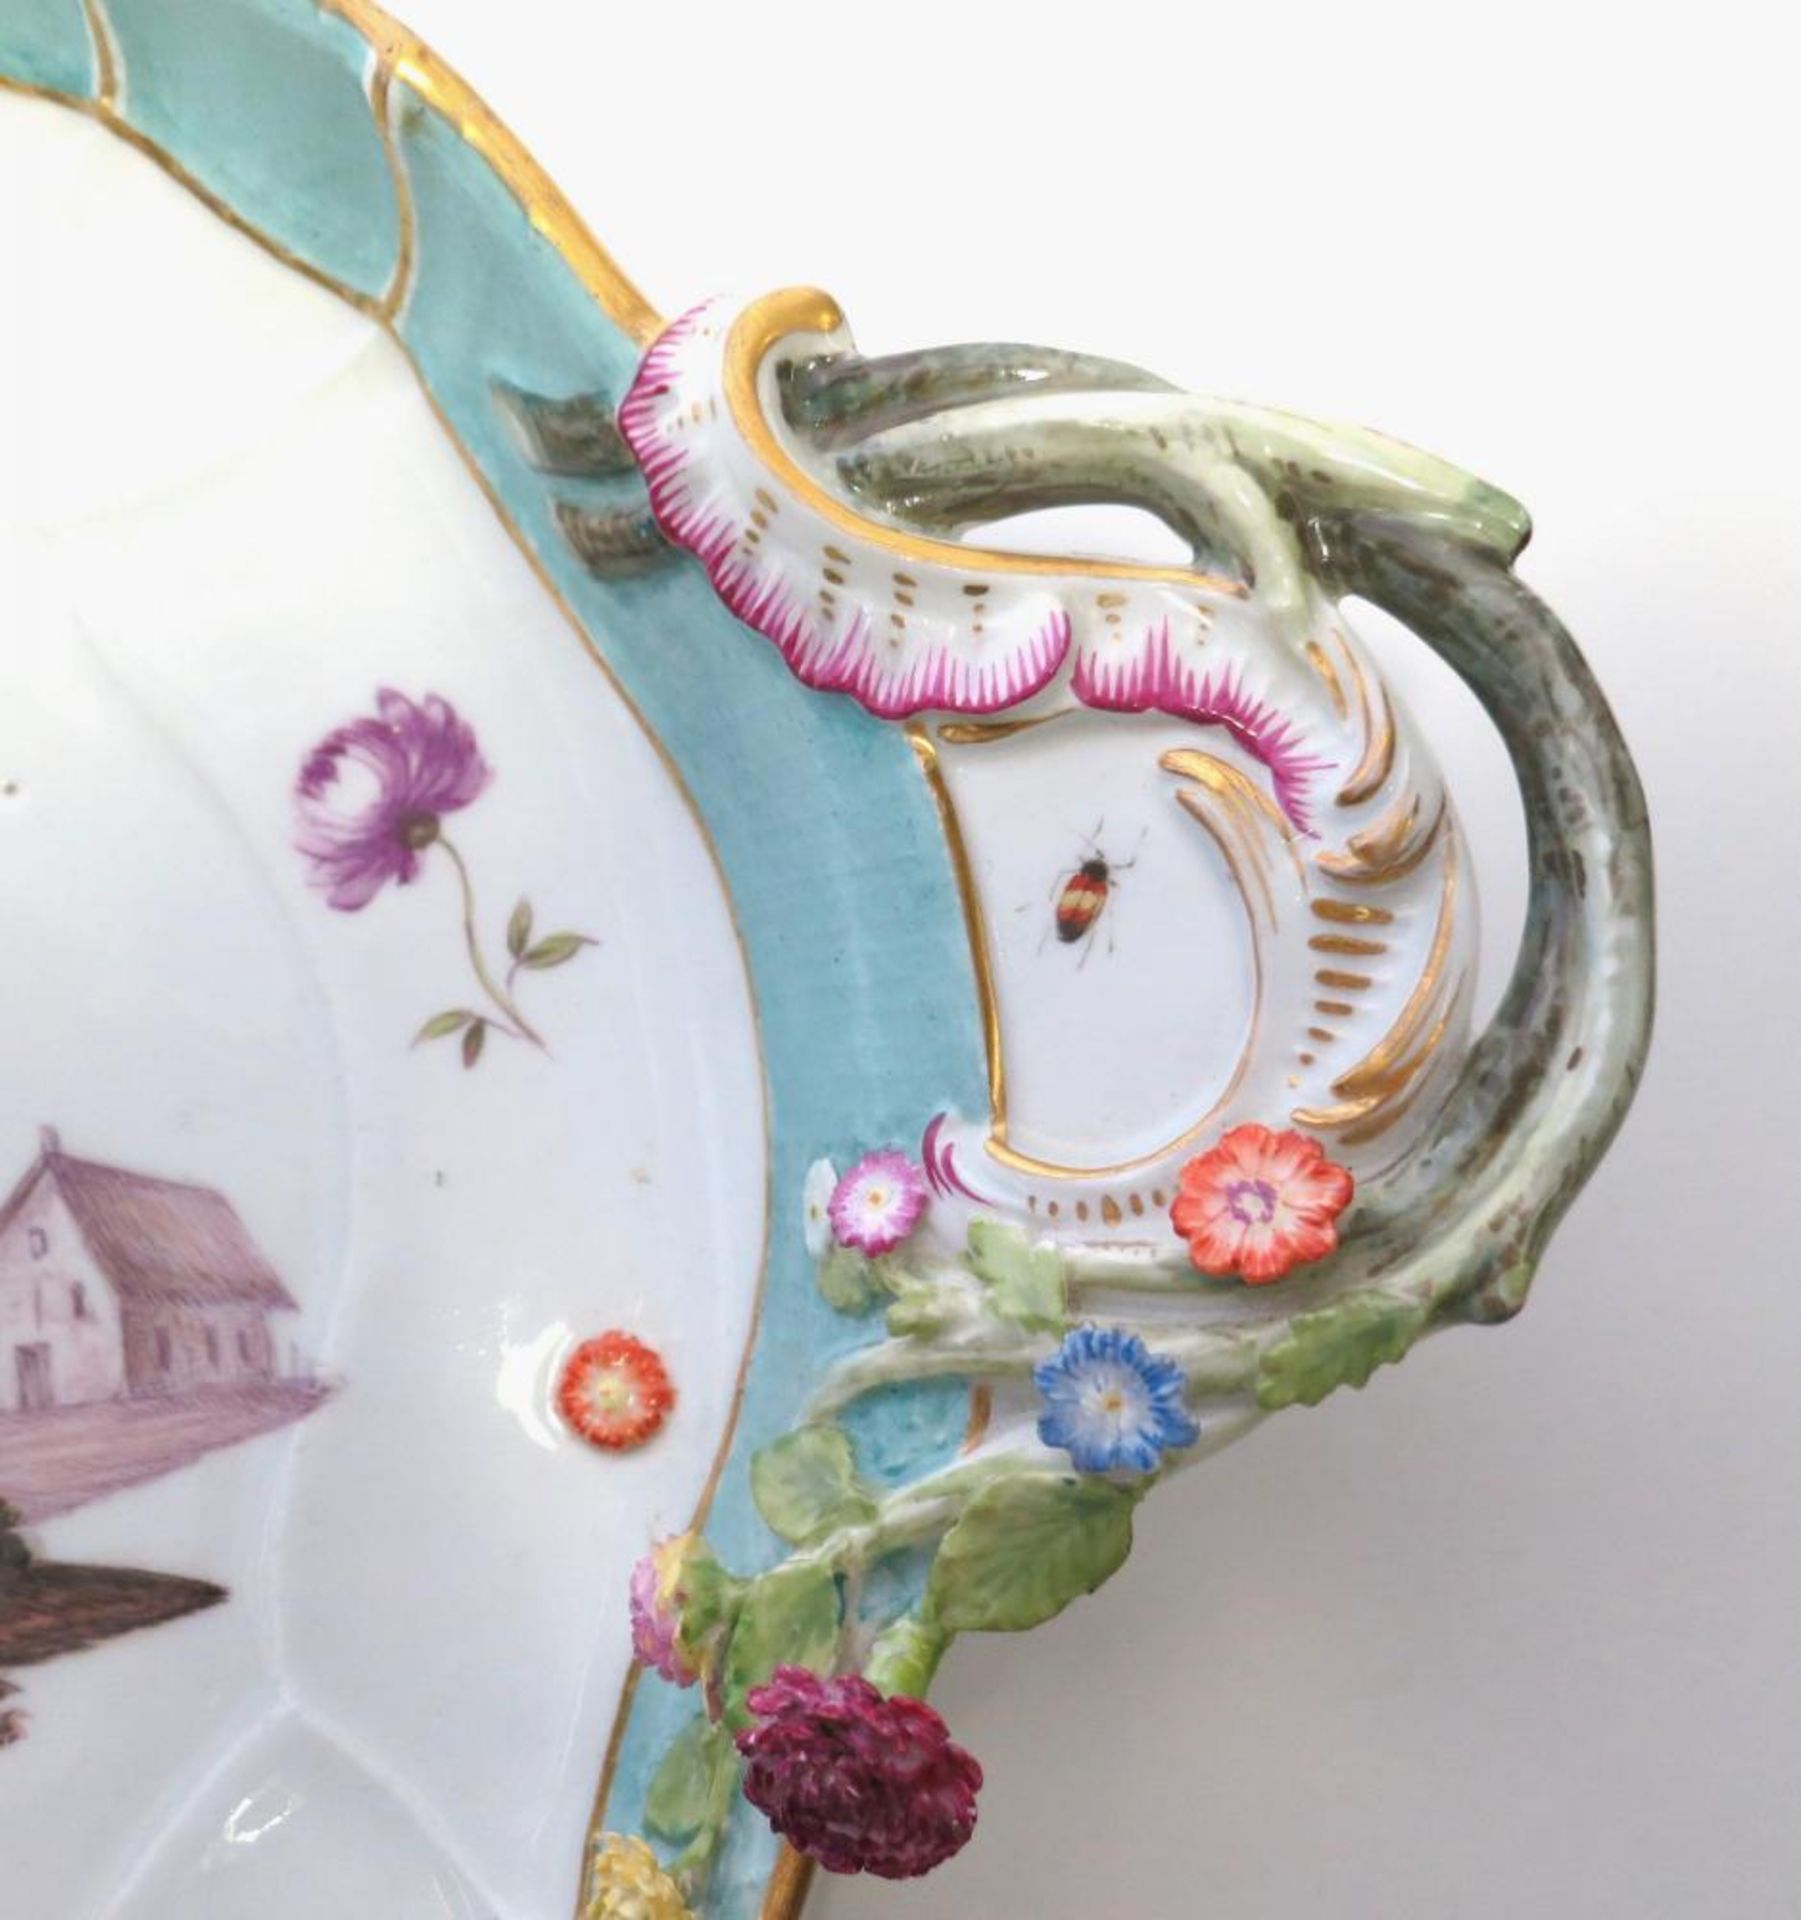 Meissen: Large porcelain platter with genre scene - Image 5 of 6